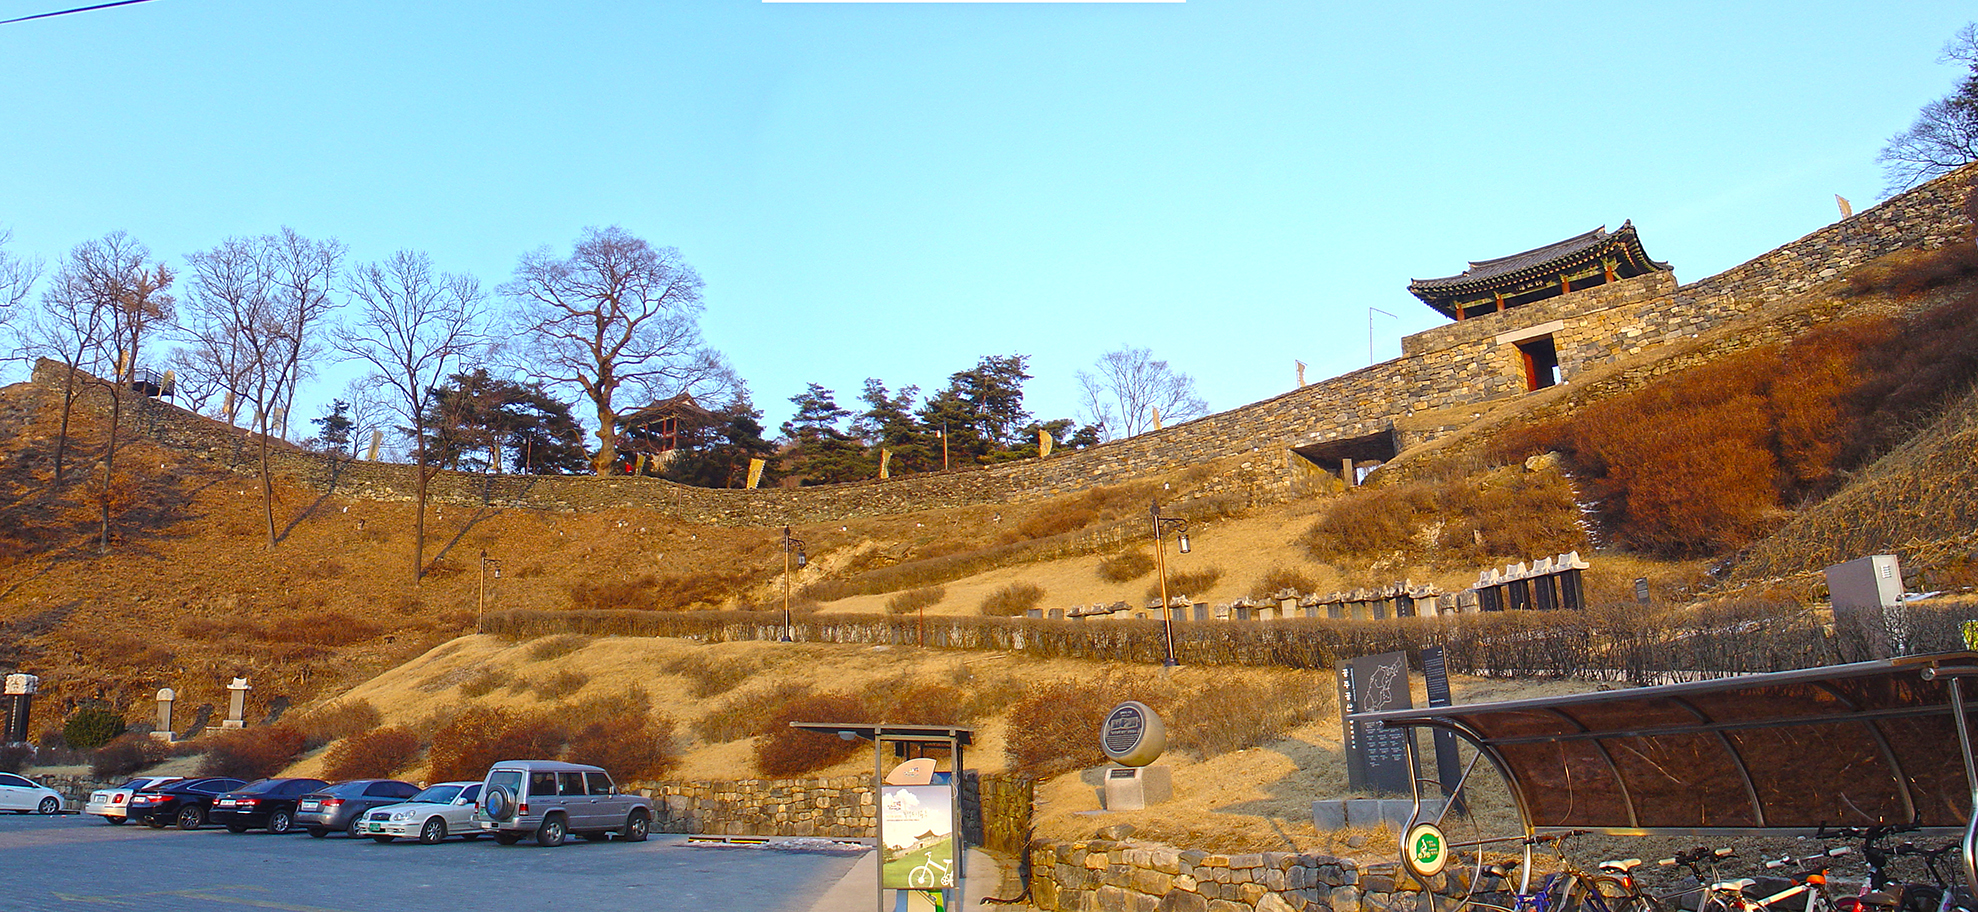 Gongsanseong (공산성) - The castle in Gongju (공주)